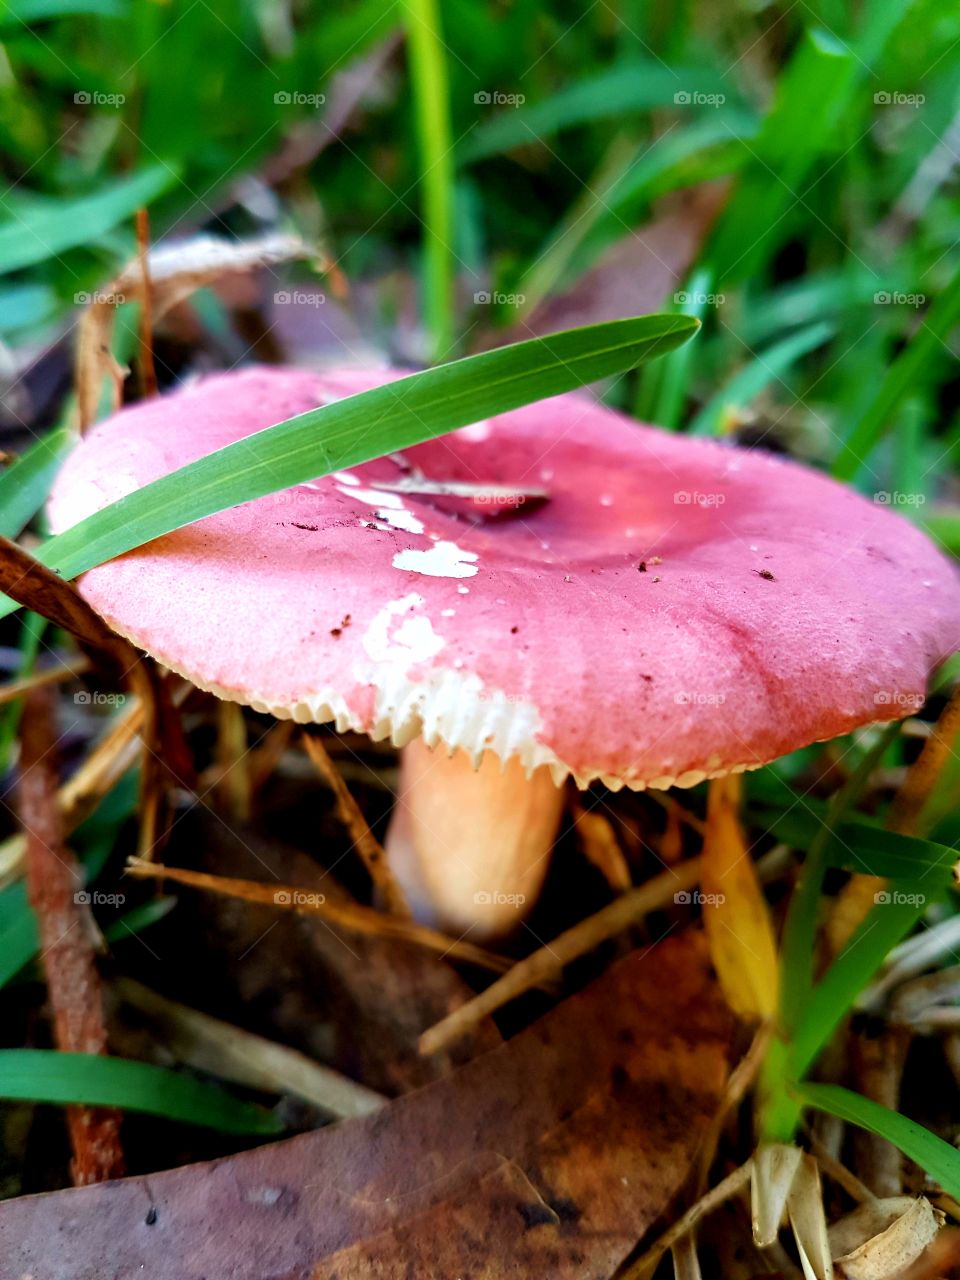 pink fungi